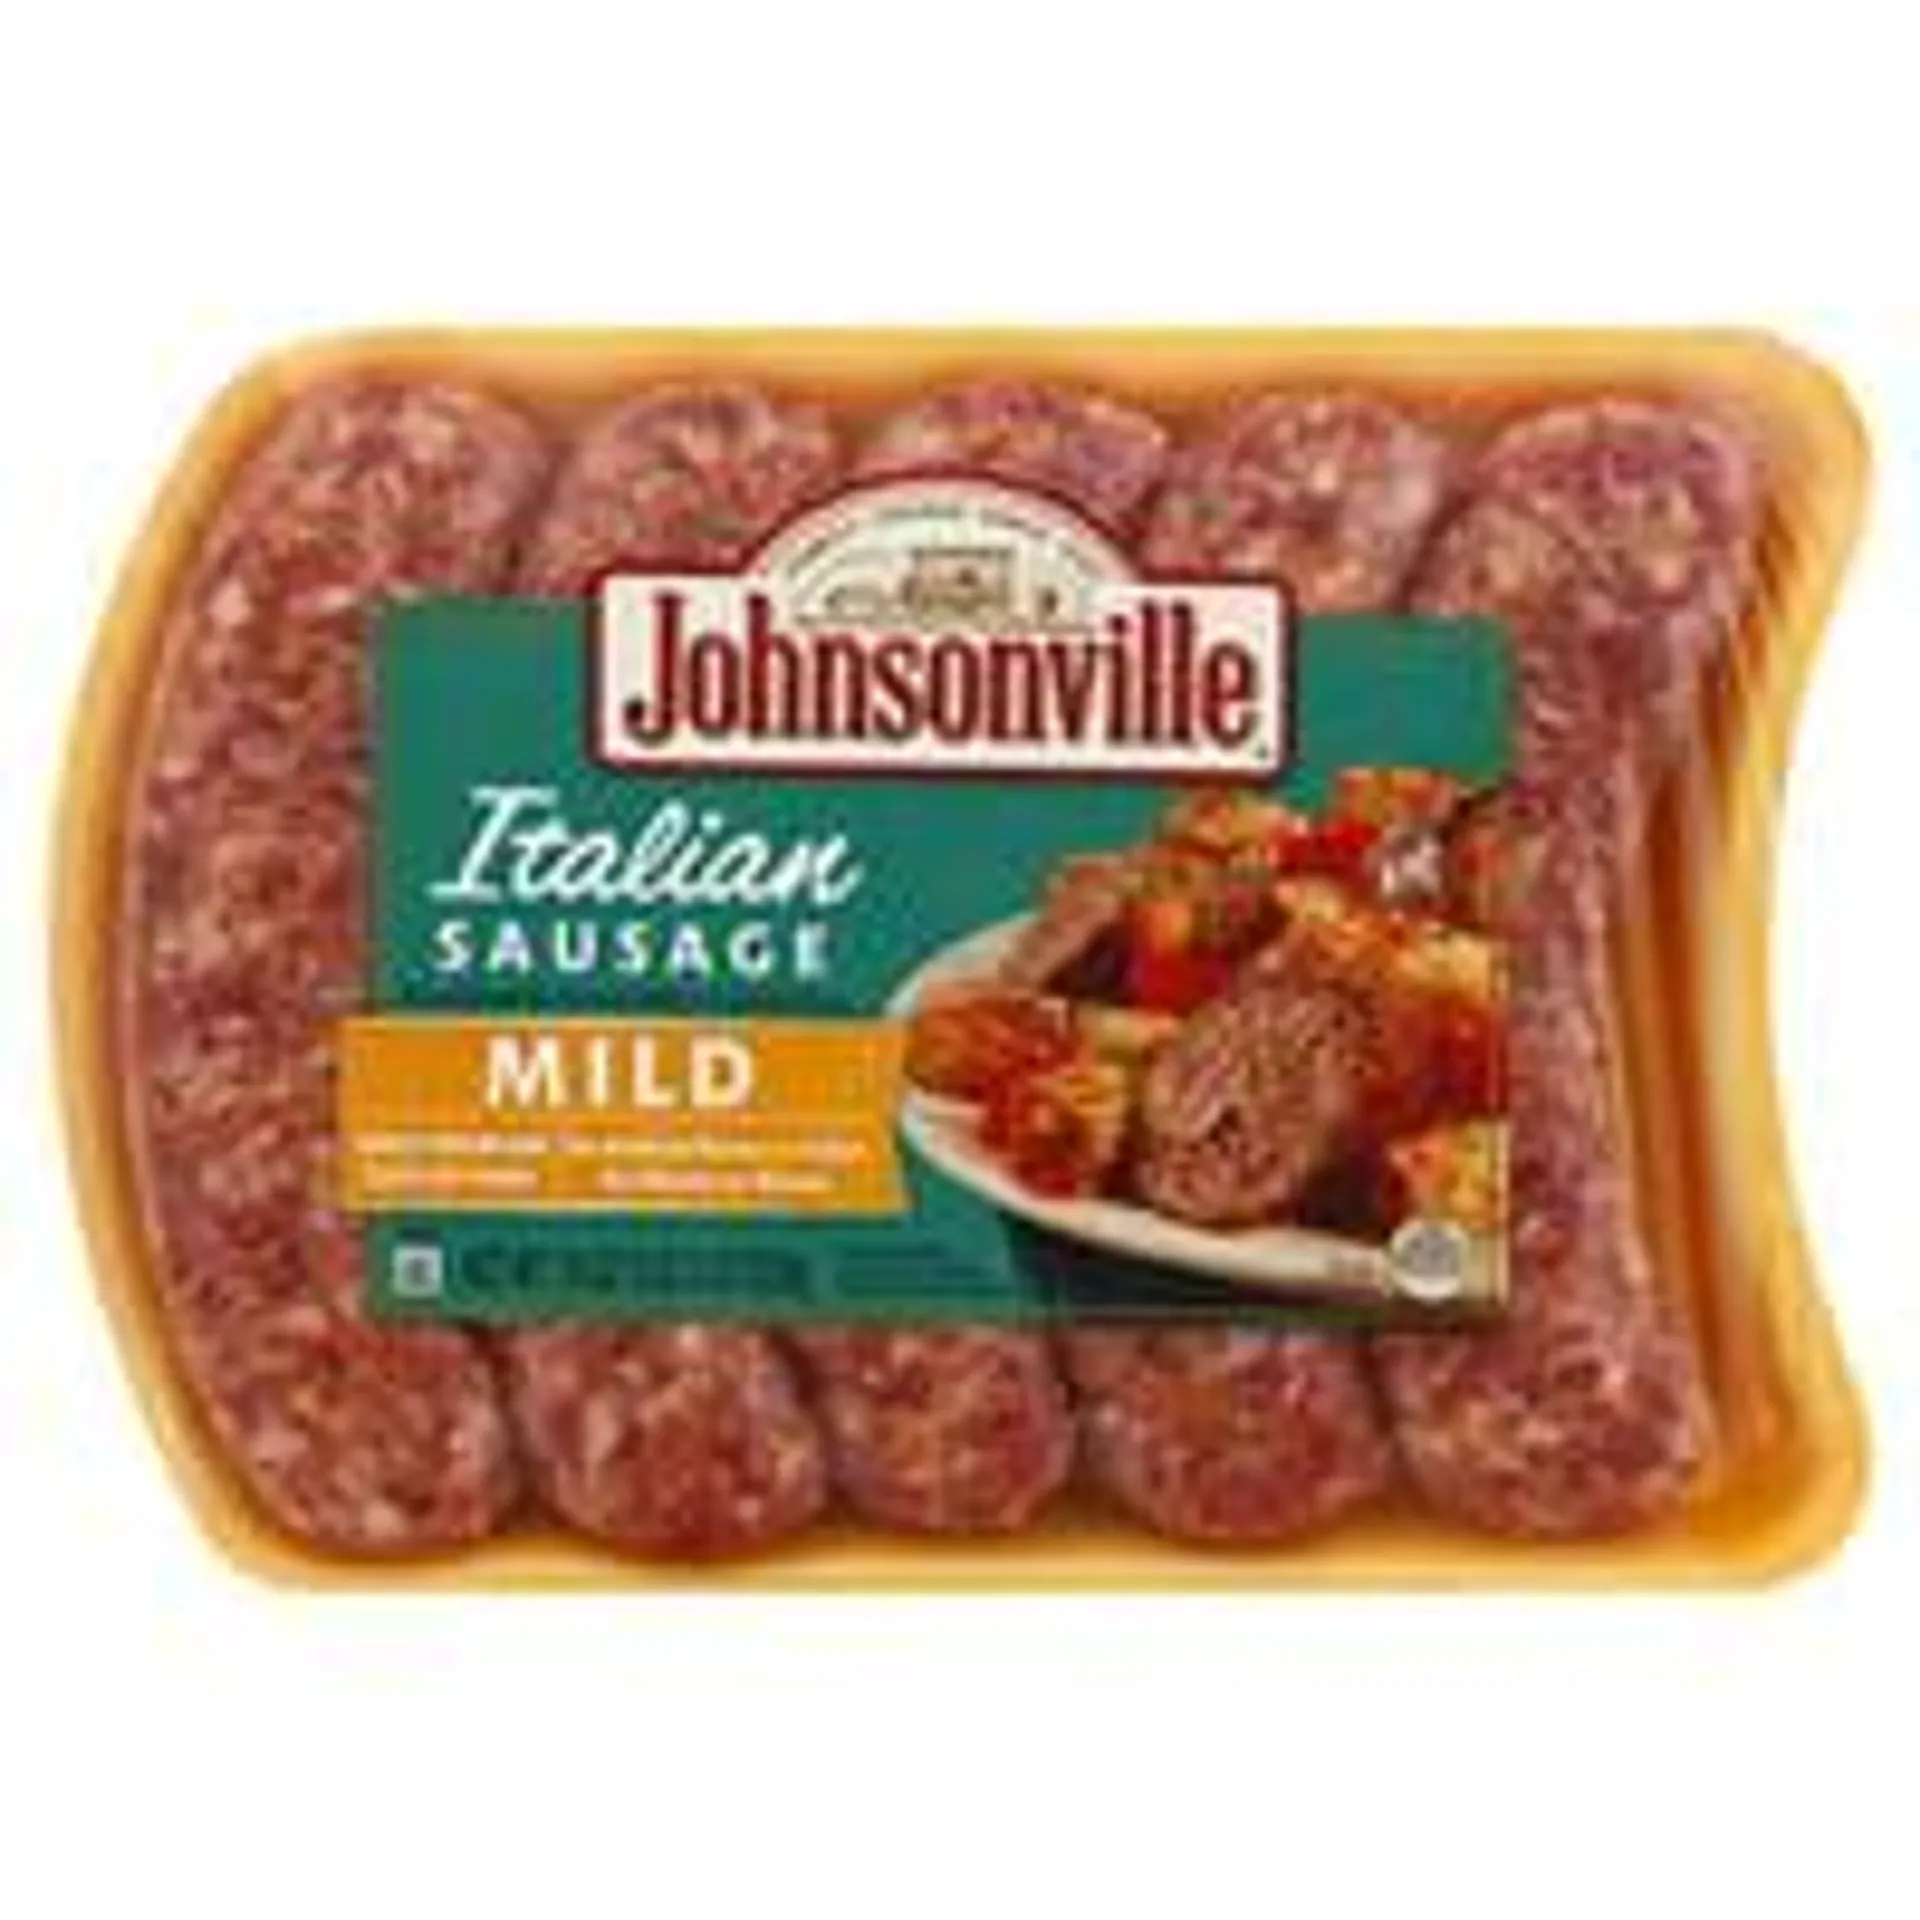 Johnsonville, Sausage, Italian, Mild